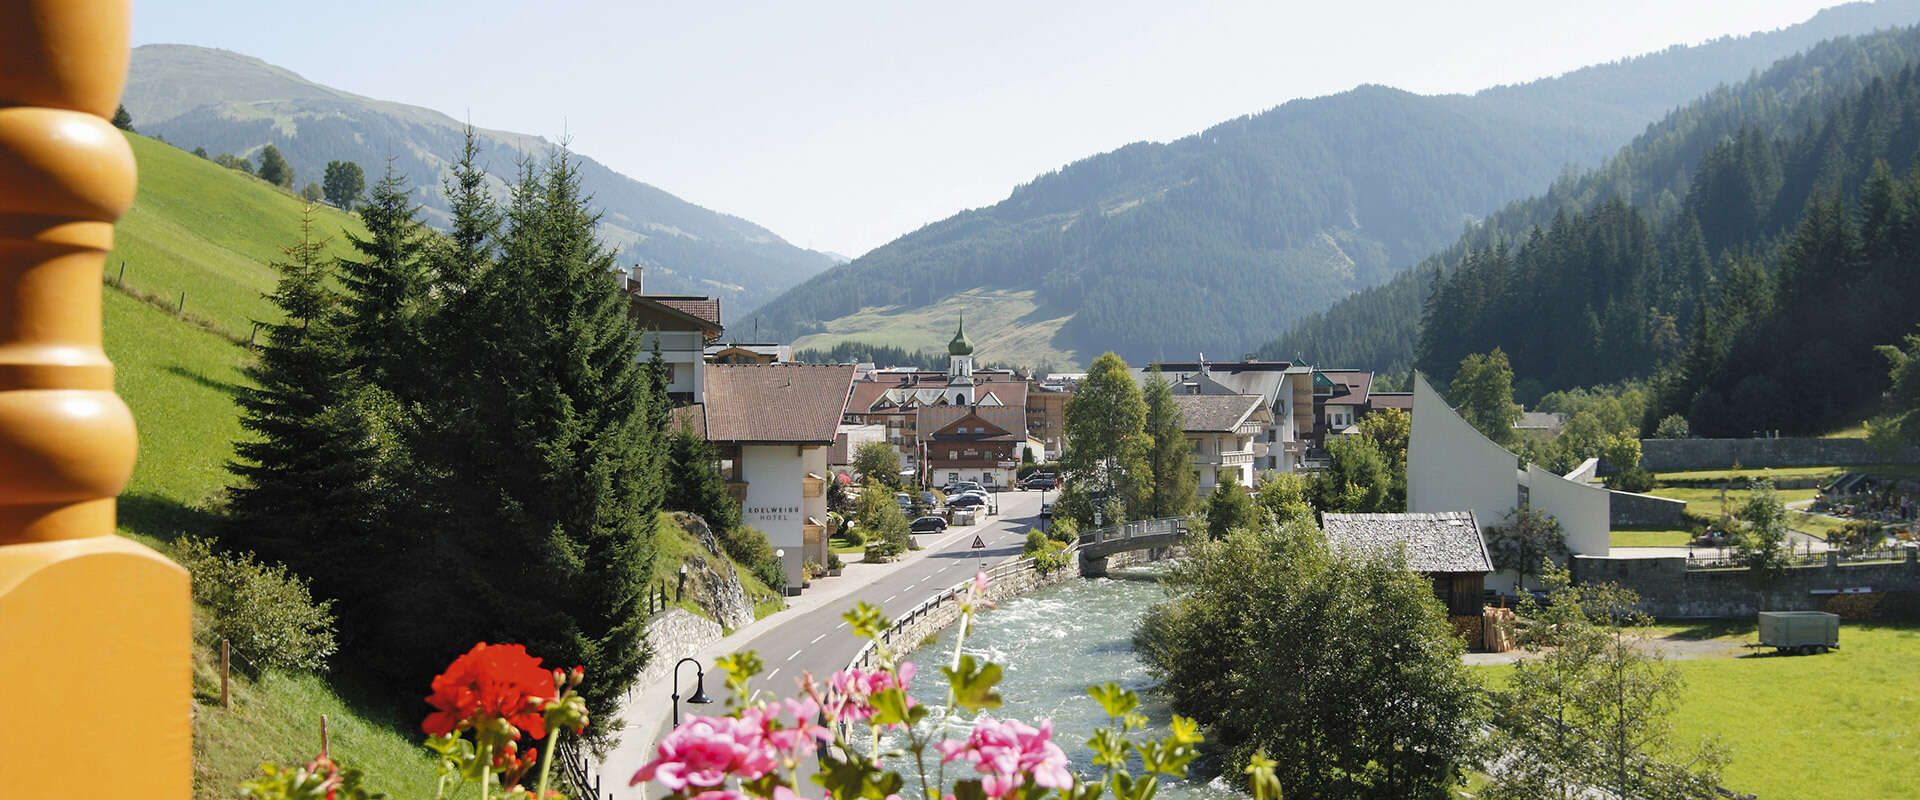 Ausblick vom Hotel Alpenherz im Zillertal, Tirol